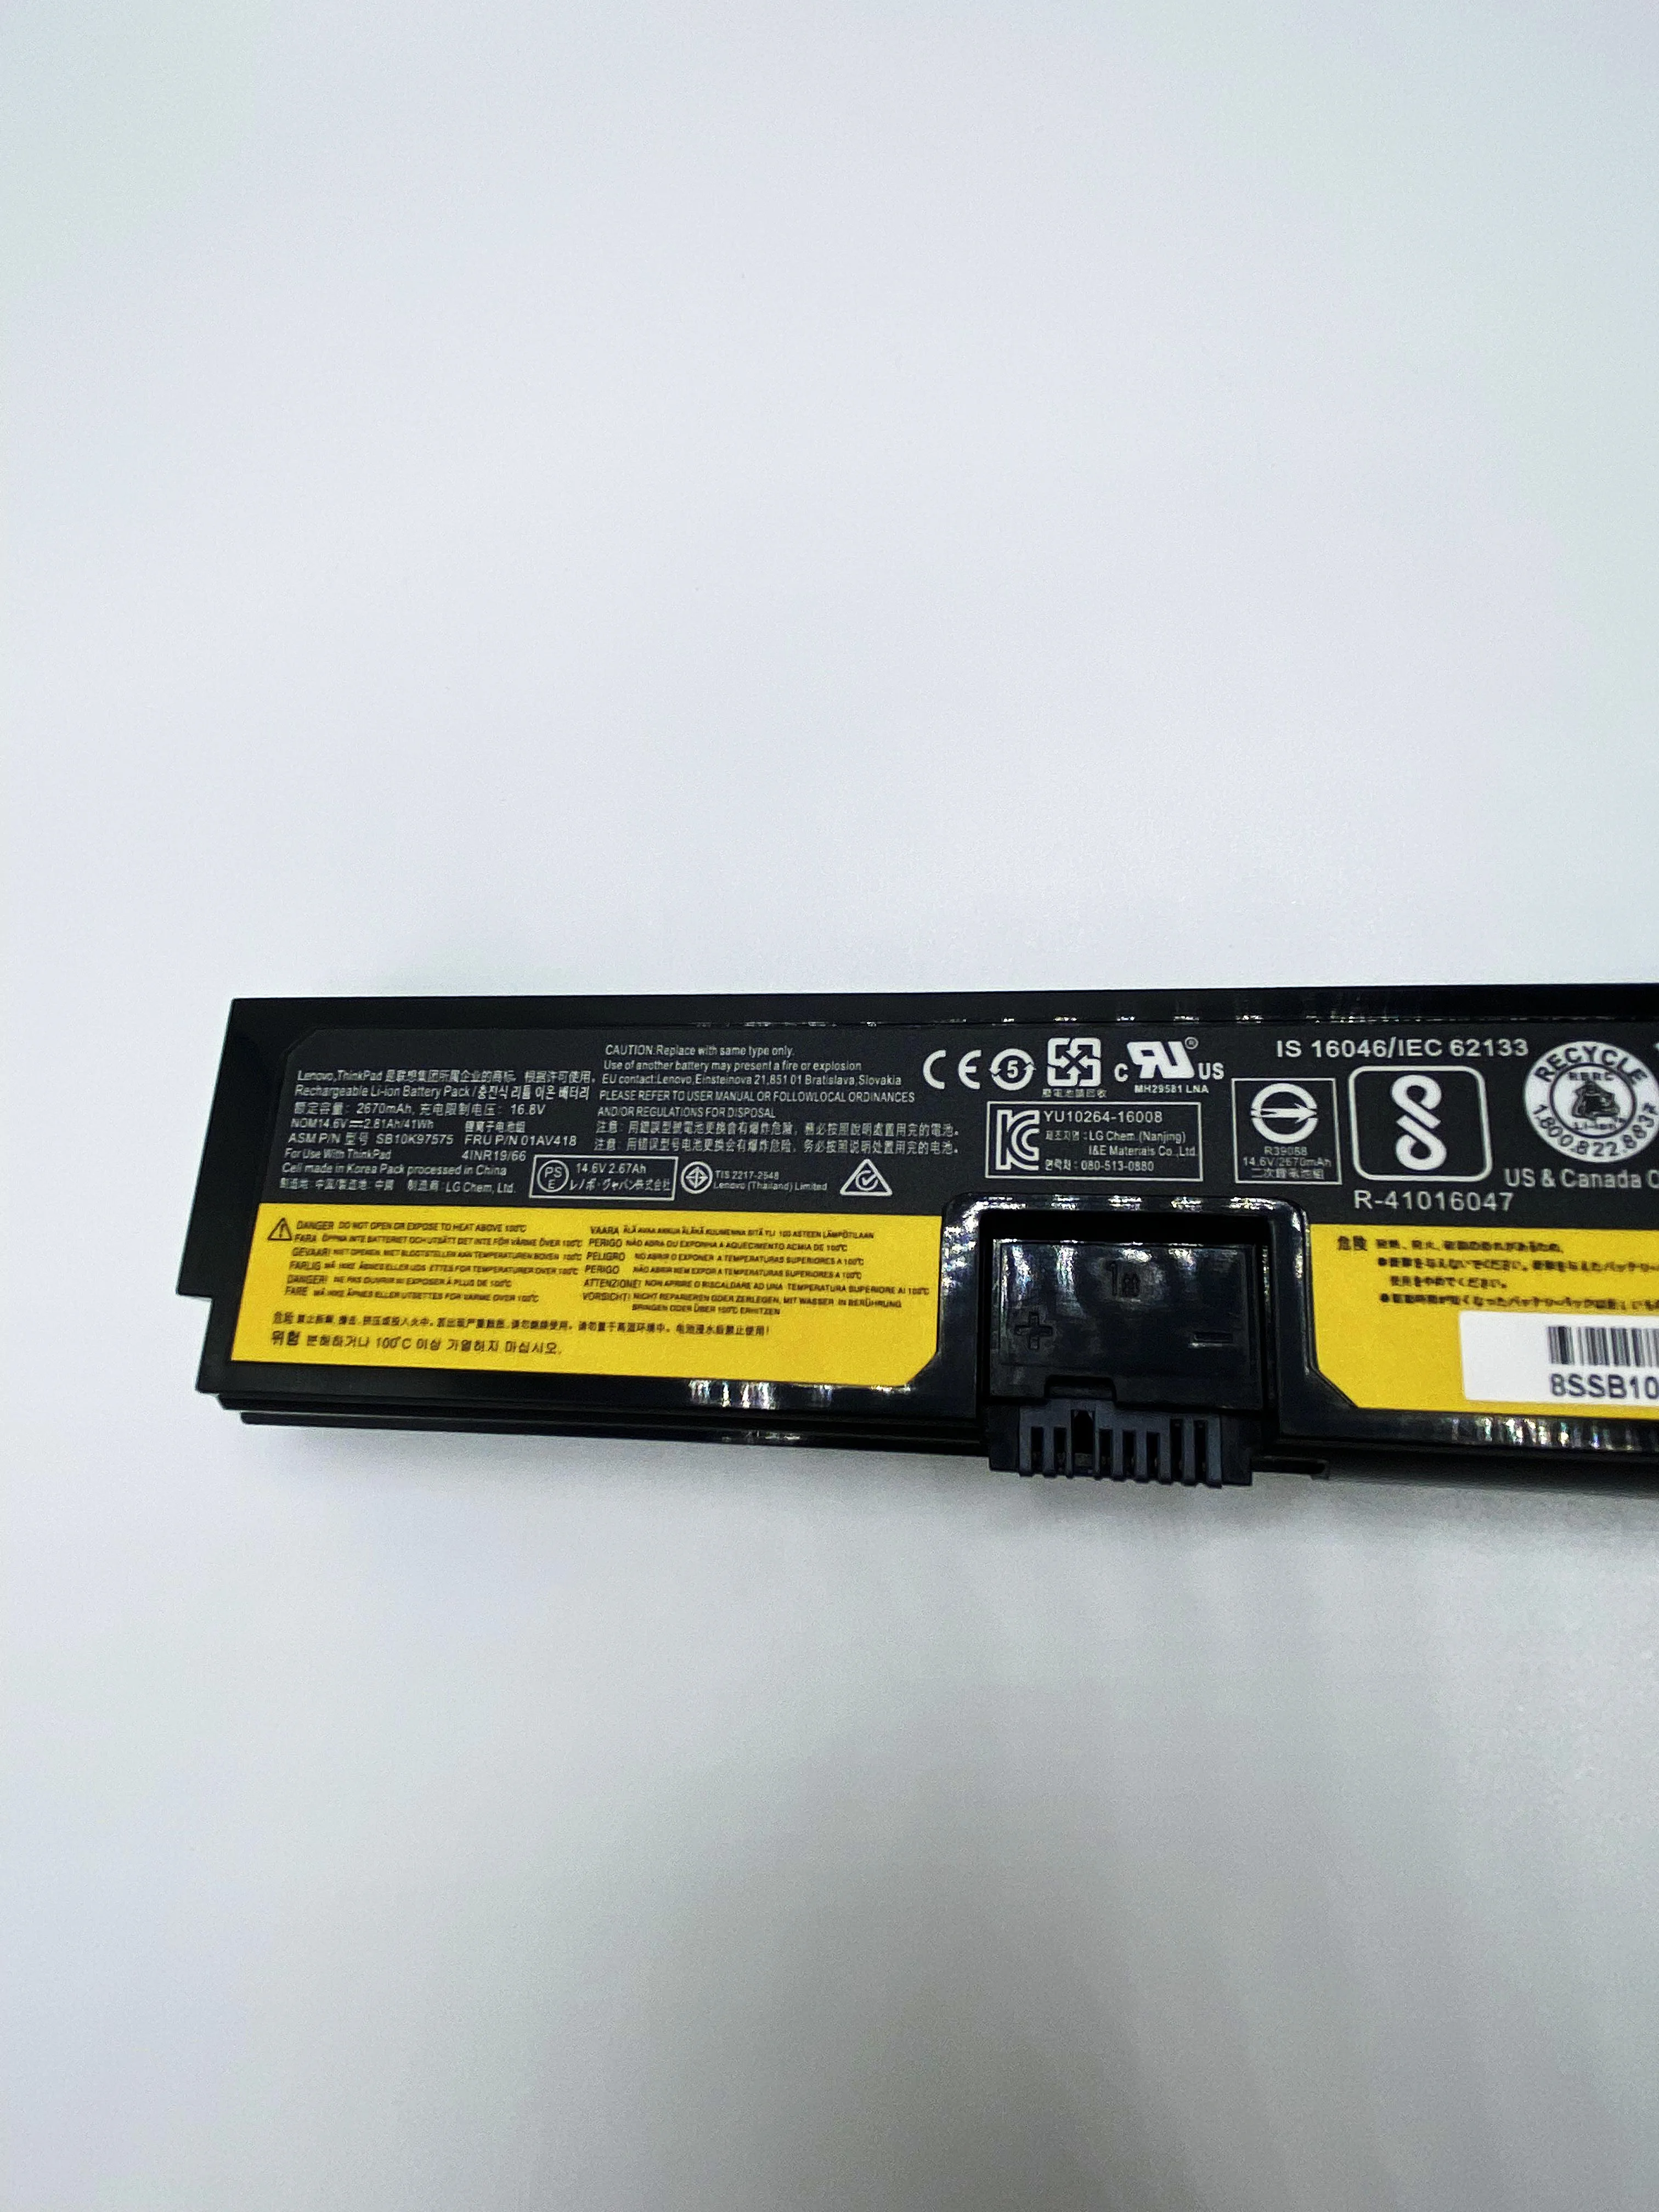 New Original 01AV418 Laptop Battery For Lenovo ThinkPad E570 E570C E575 Series 01AV417 01AV416 SB10K97574 SB10K97575 SB10K97571